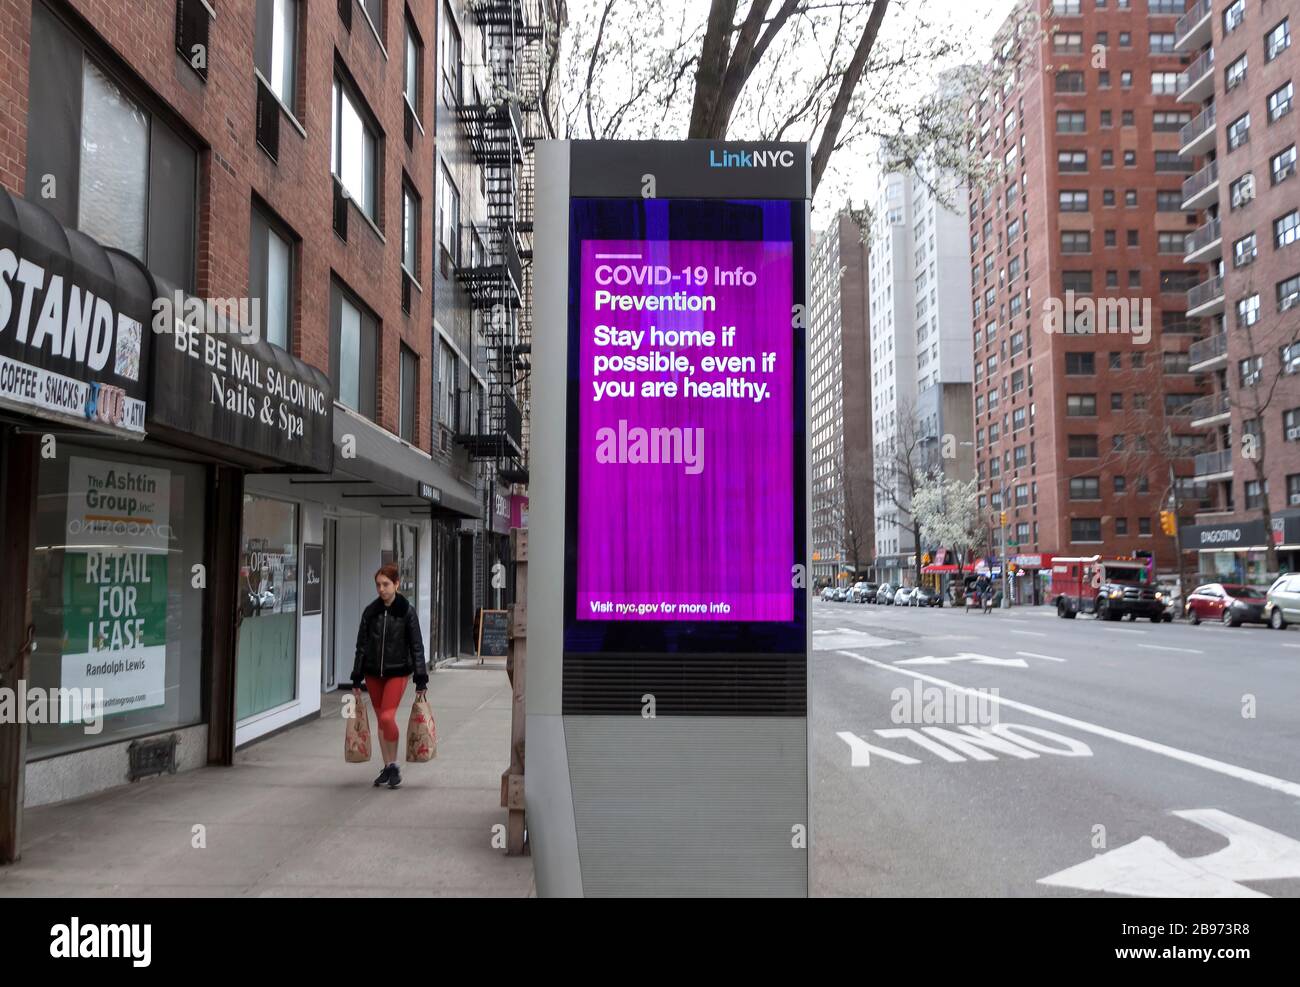 Le kiosque numérique LinkNYC affiche sur le trottoir des messages et des conseils de Covid-19 (coronavirus) sur la quarantaine pour les New-Yorkais. Banque D'Images